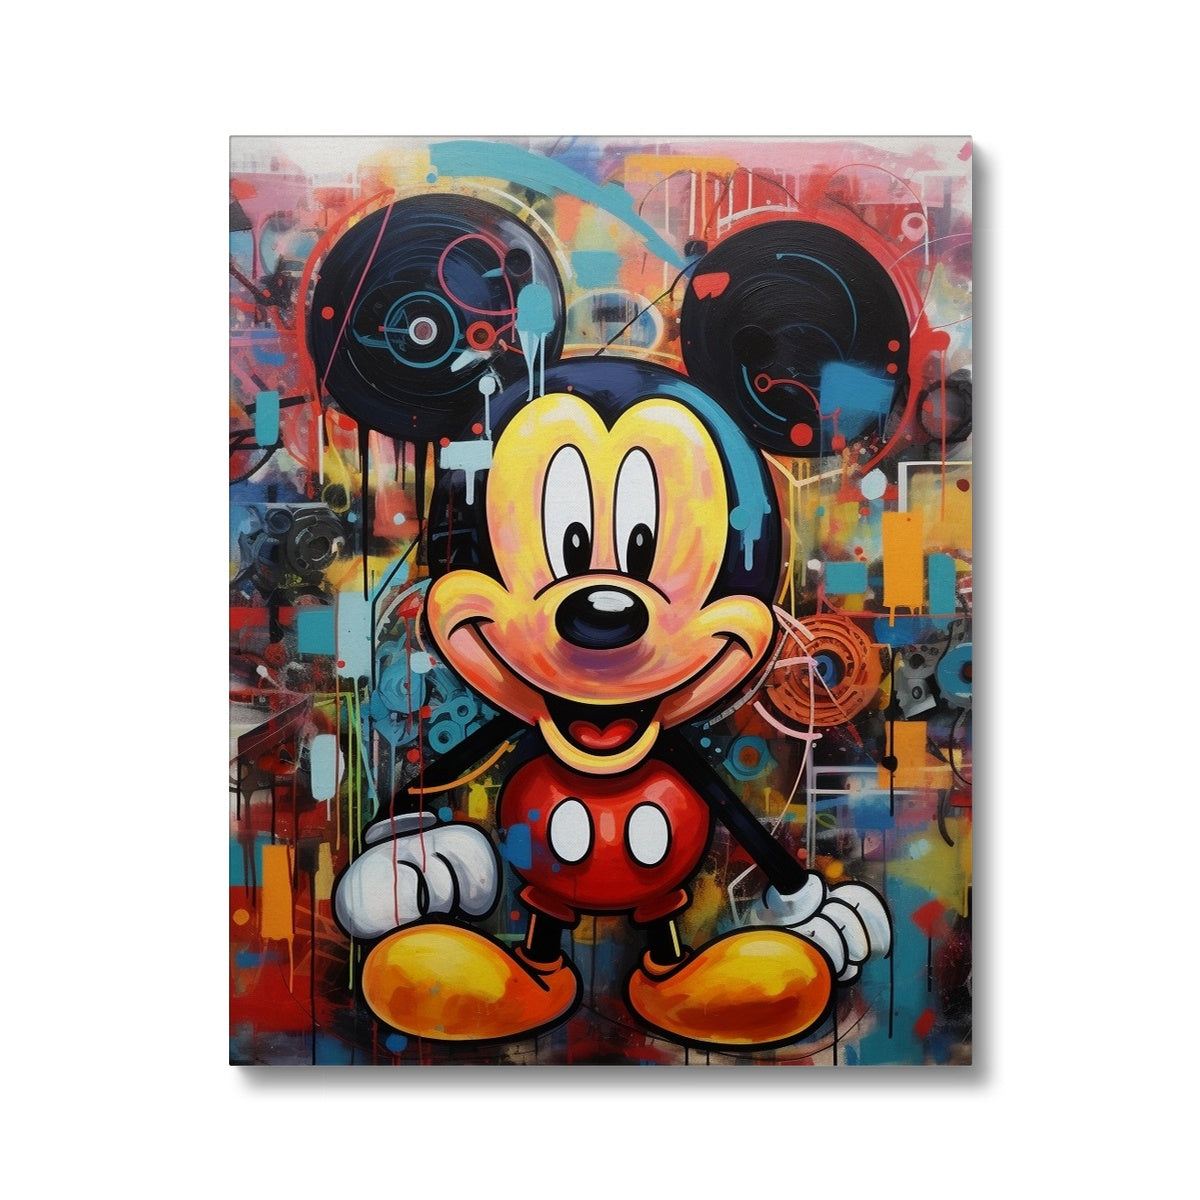 Micky Mouse Canvas